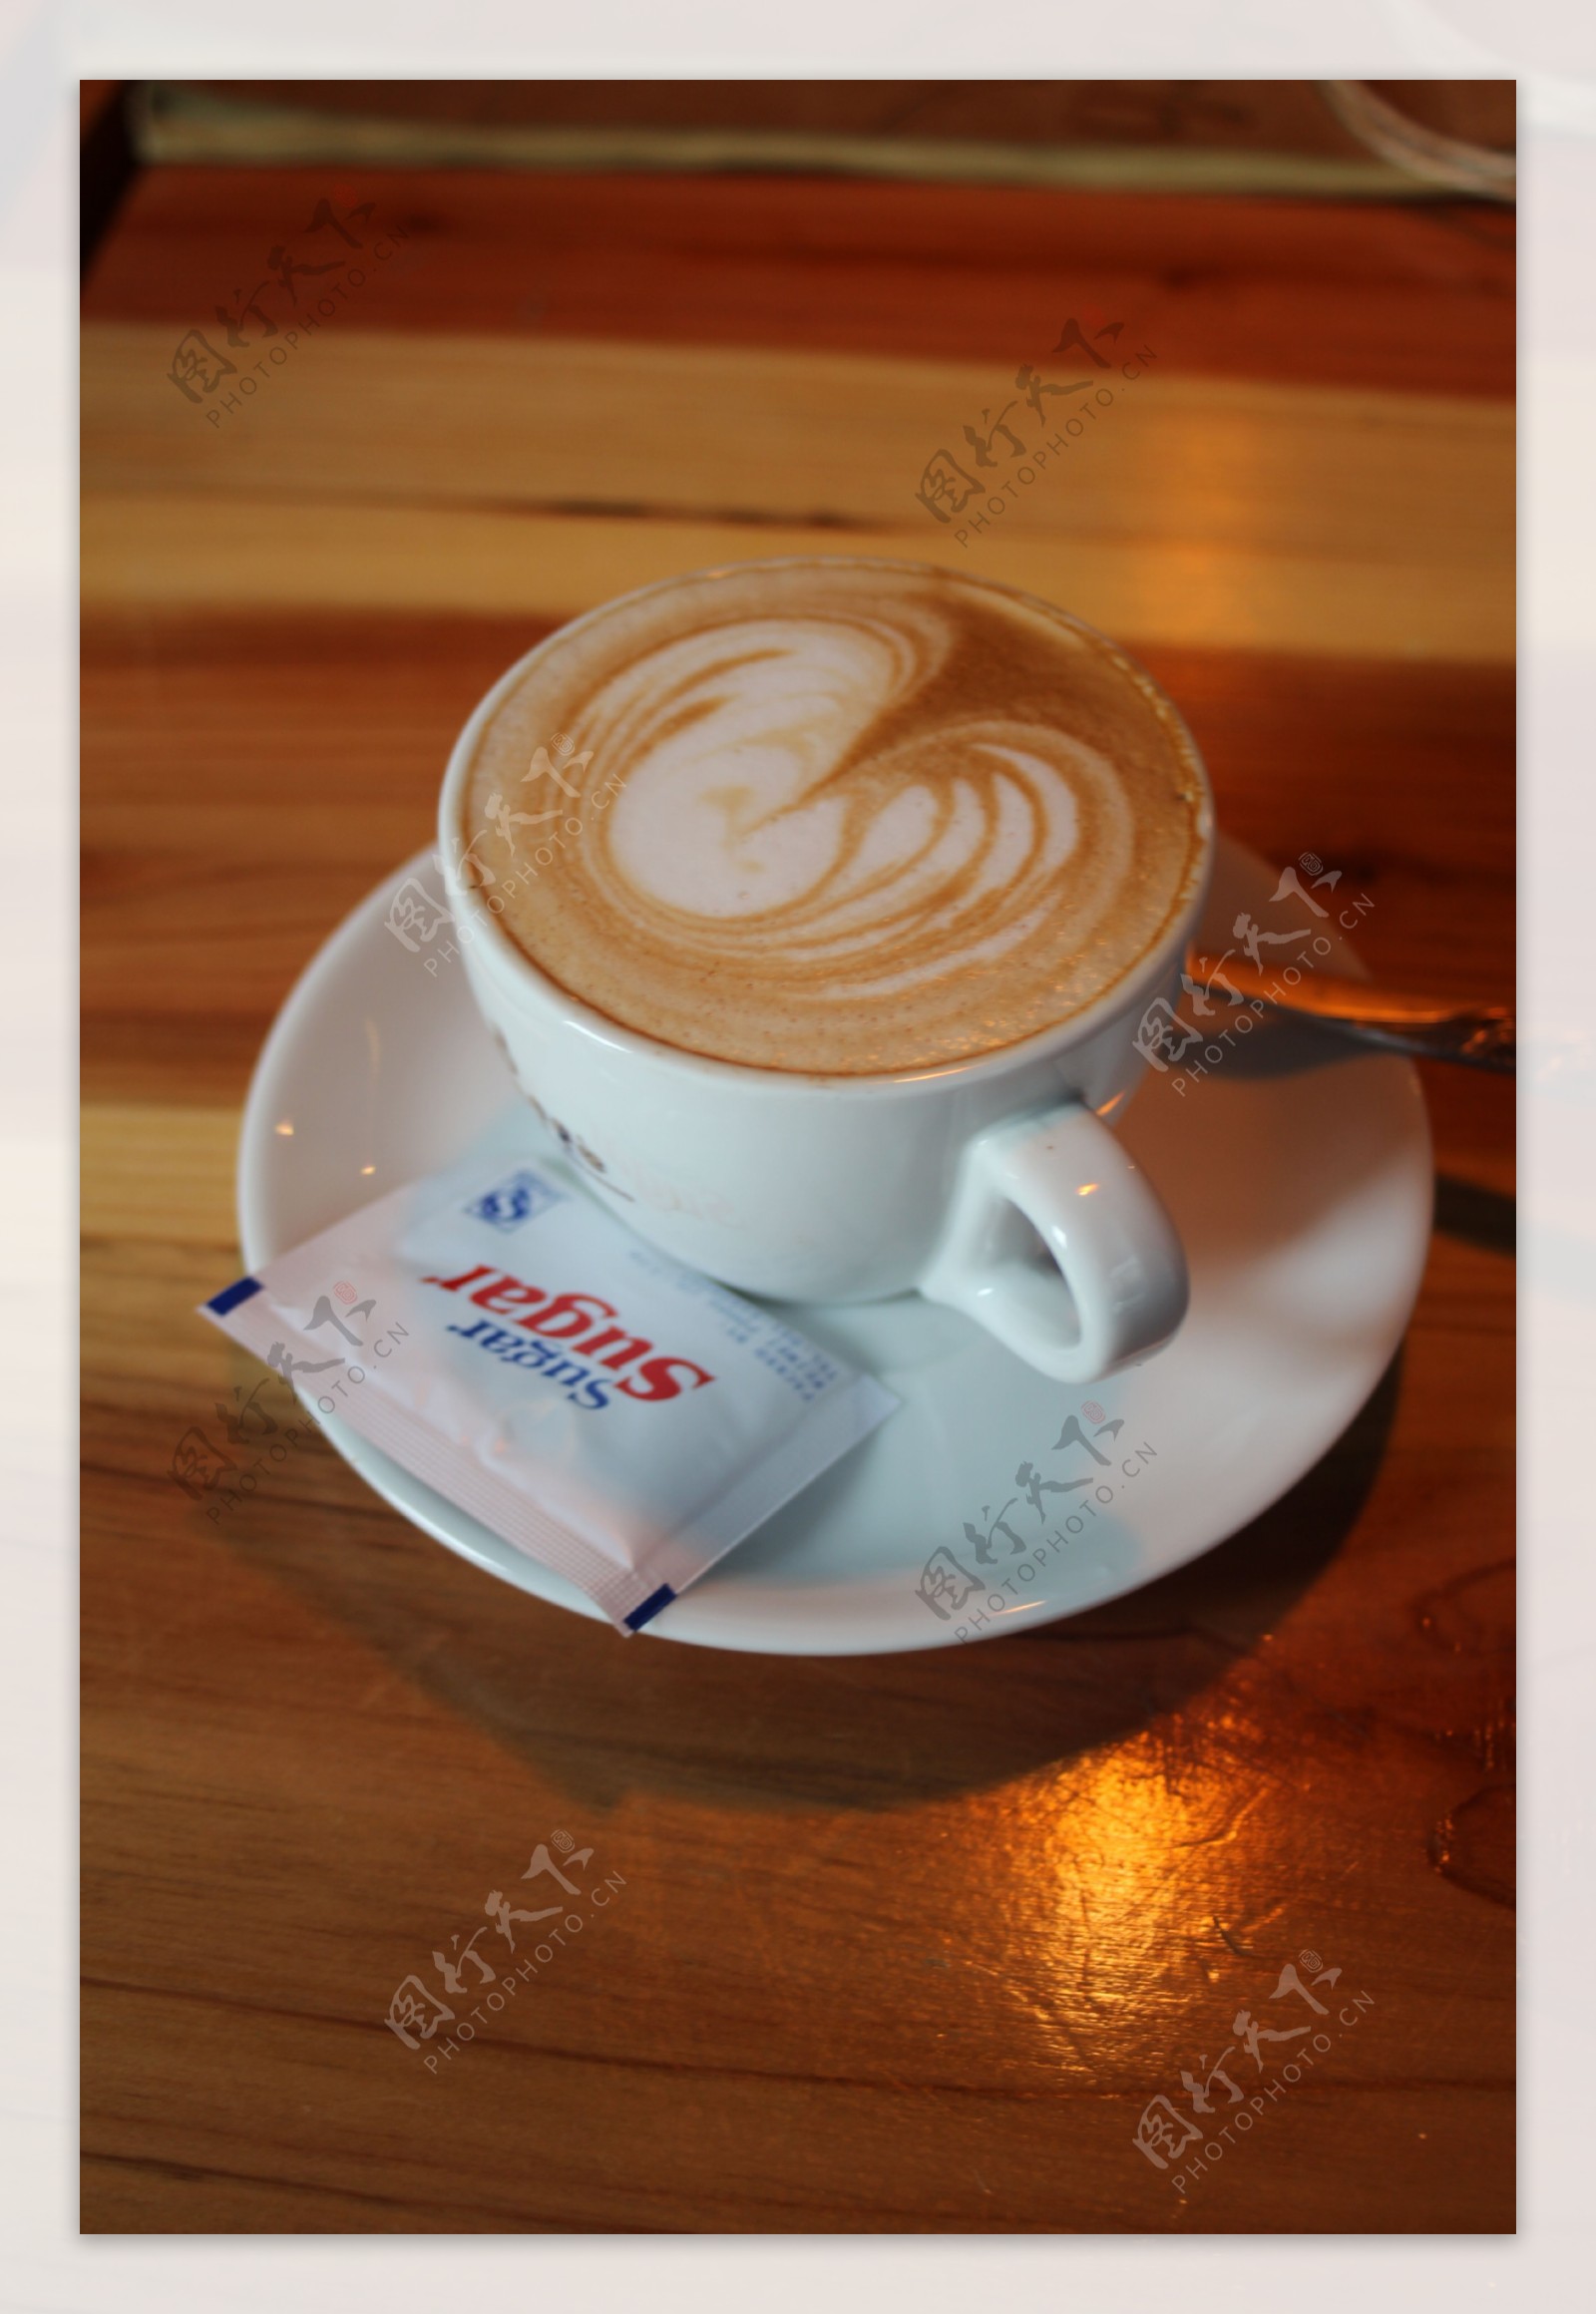 图片素材 : 杯子, 拿铁, 卡布奇诺, 喝, 浓咖啡, 咖啡杯, 咖啡因, 味道, 纯白色, caf au lait, cortado ...